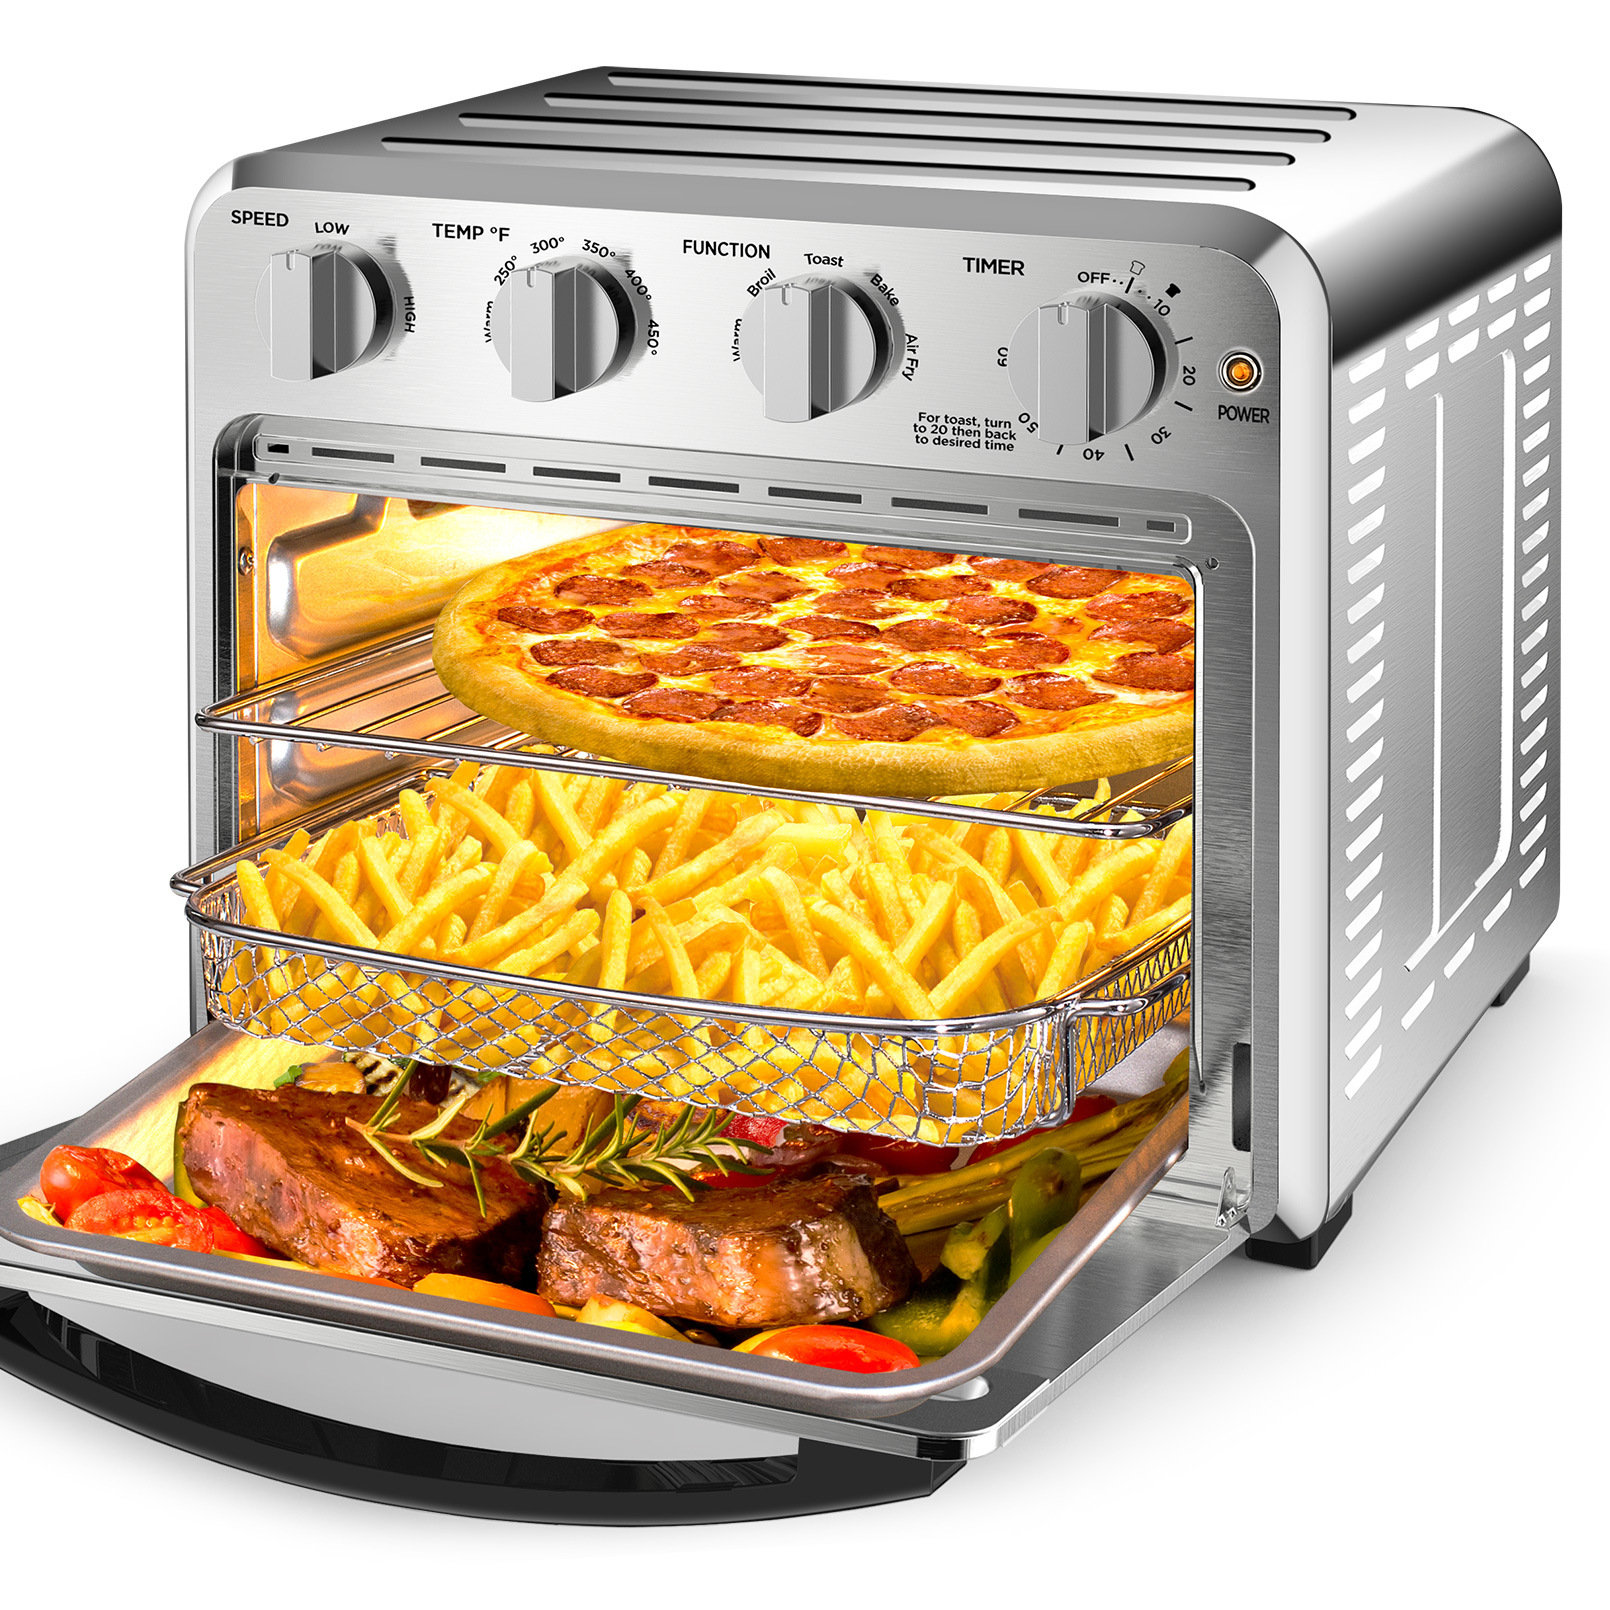 https://assets.wfcdn.com/im/04745435/compr-r85/2376/237680553/lifease-24-liter-air-fryer-toaster-oven.jpg